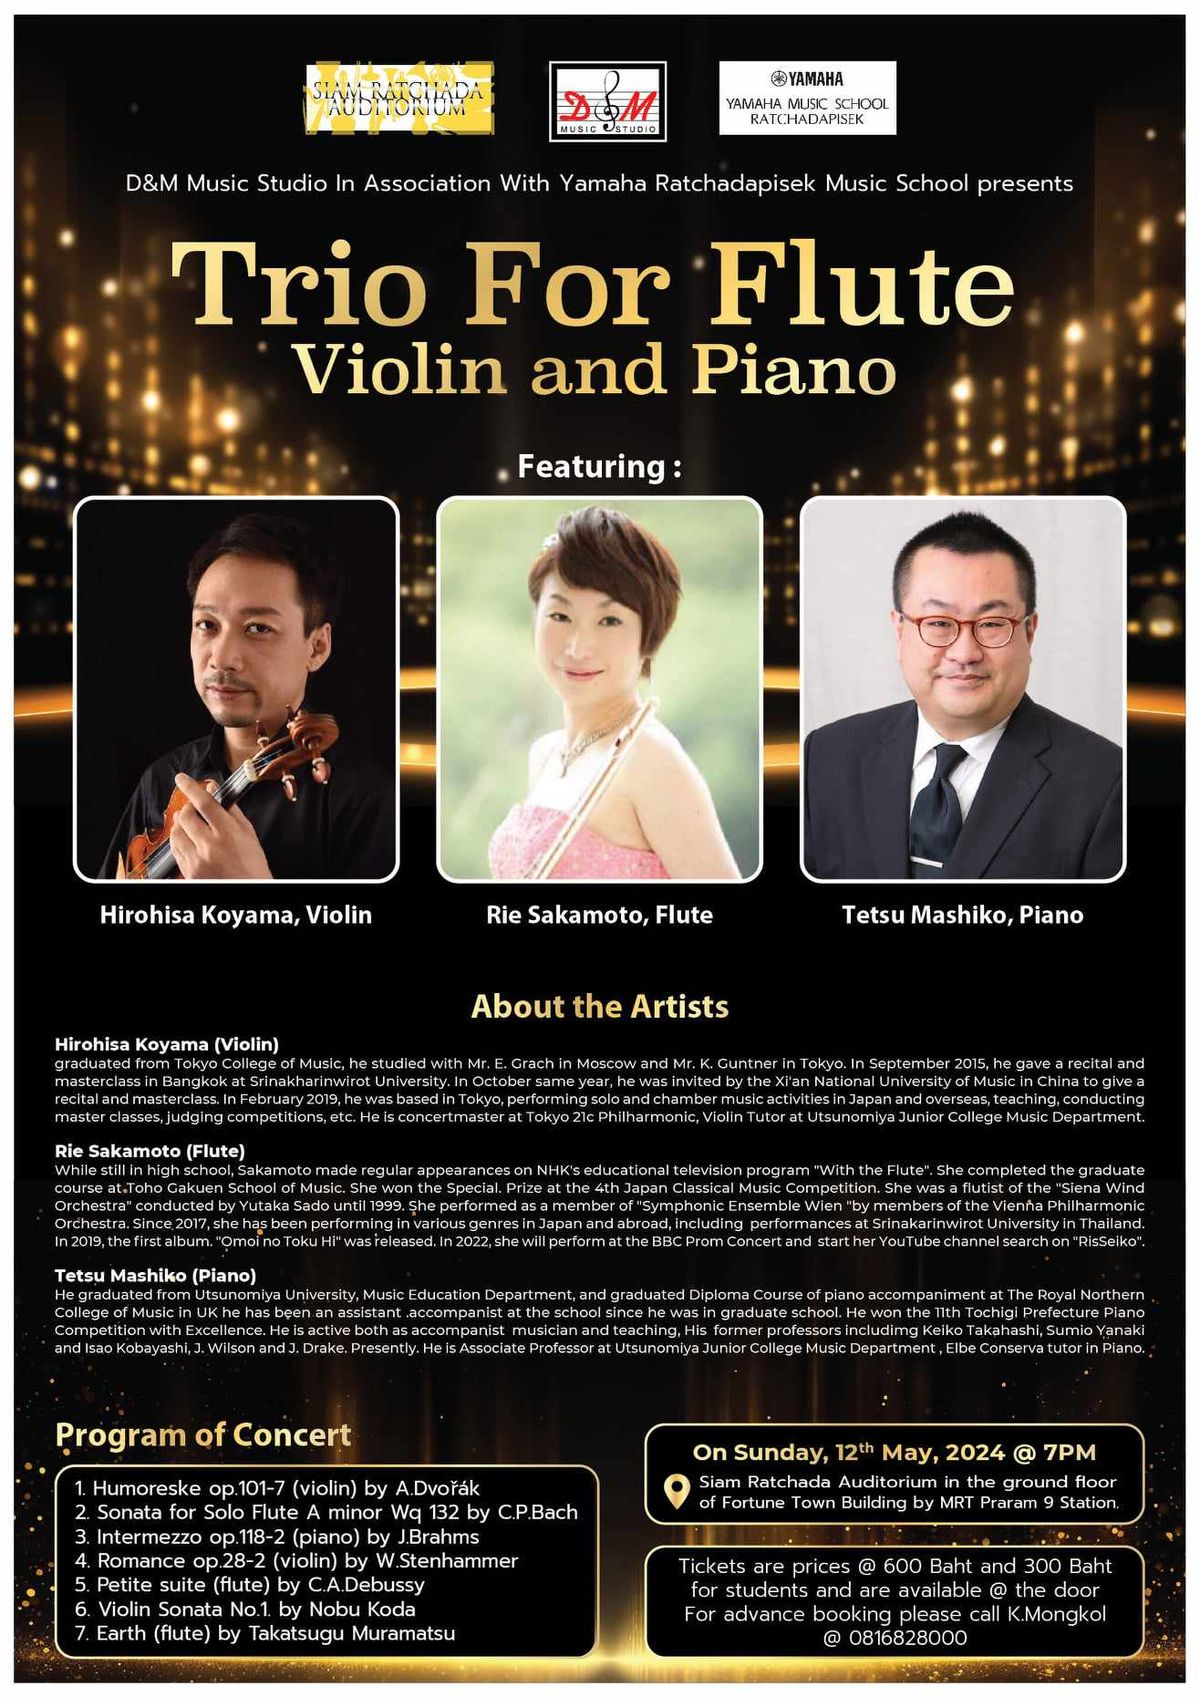 Trio For Flute Violin and Piano